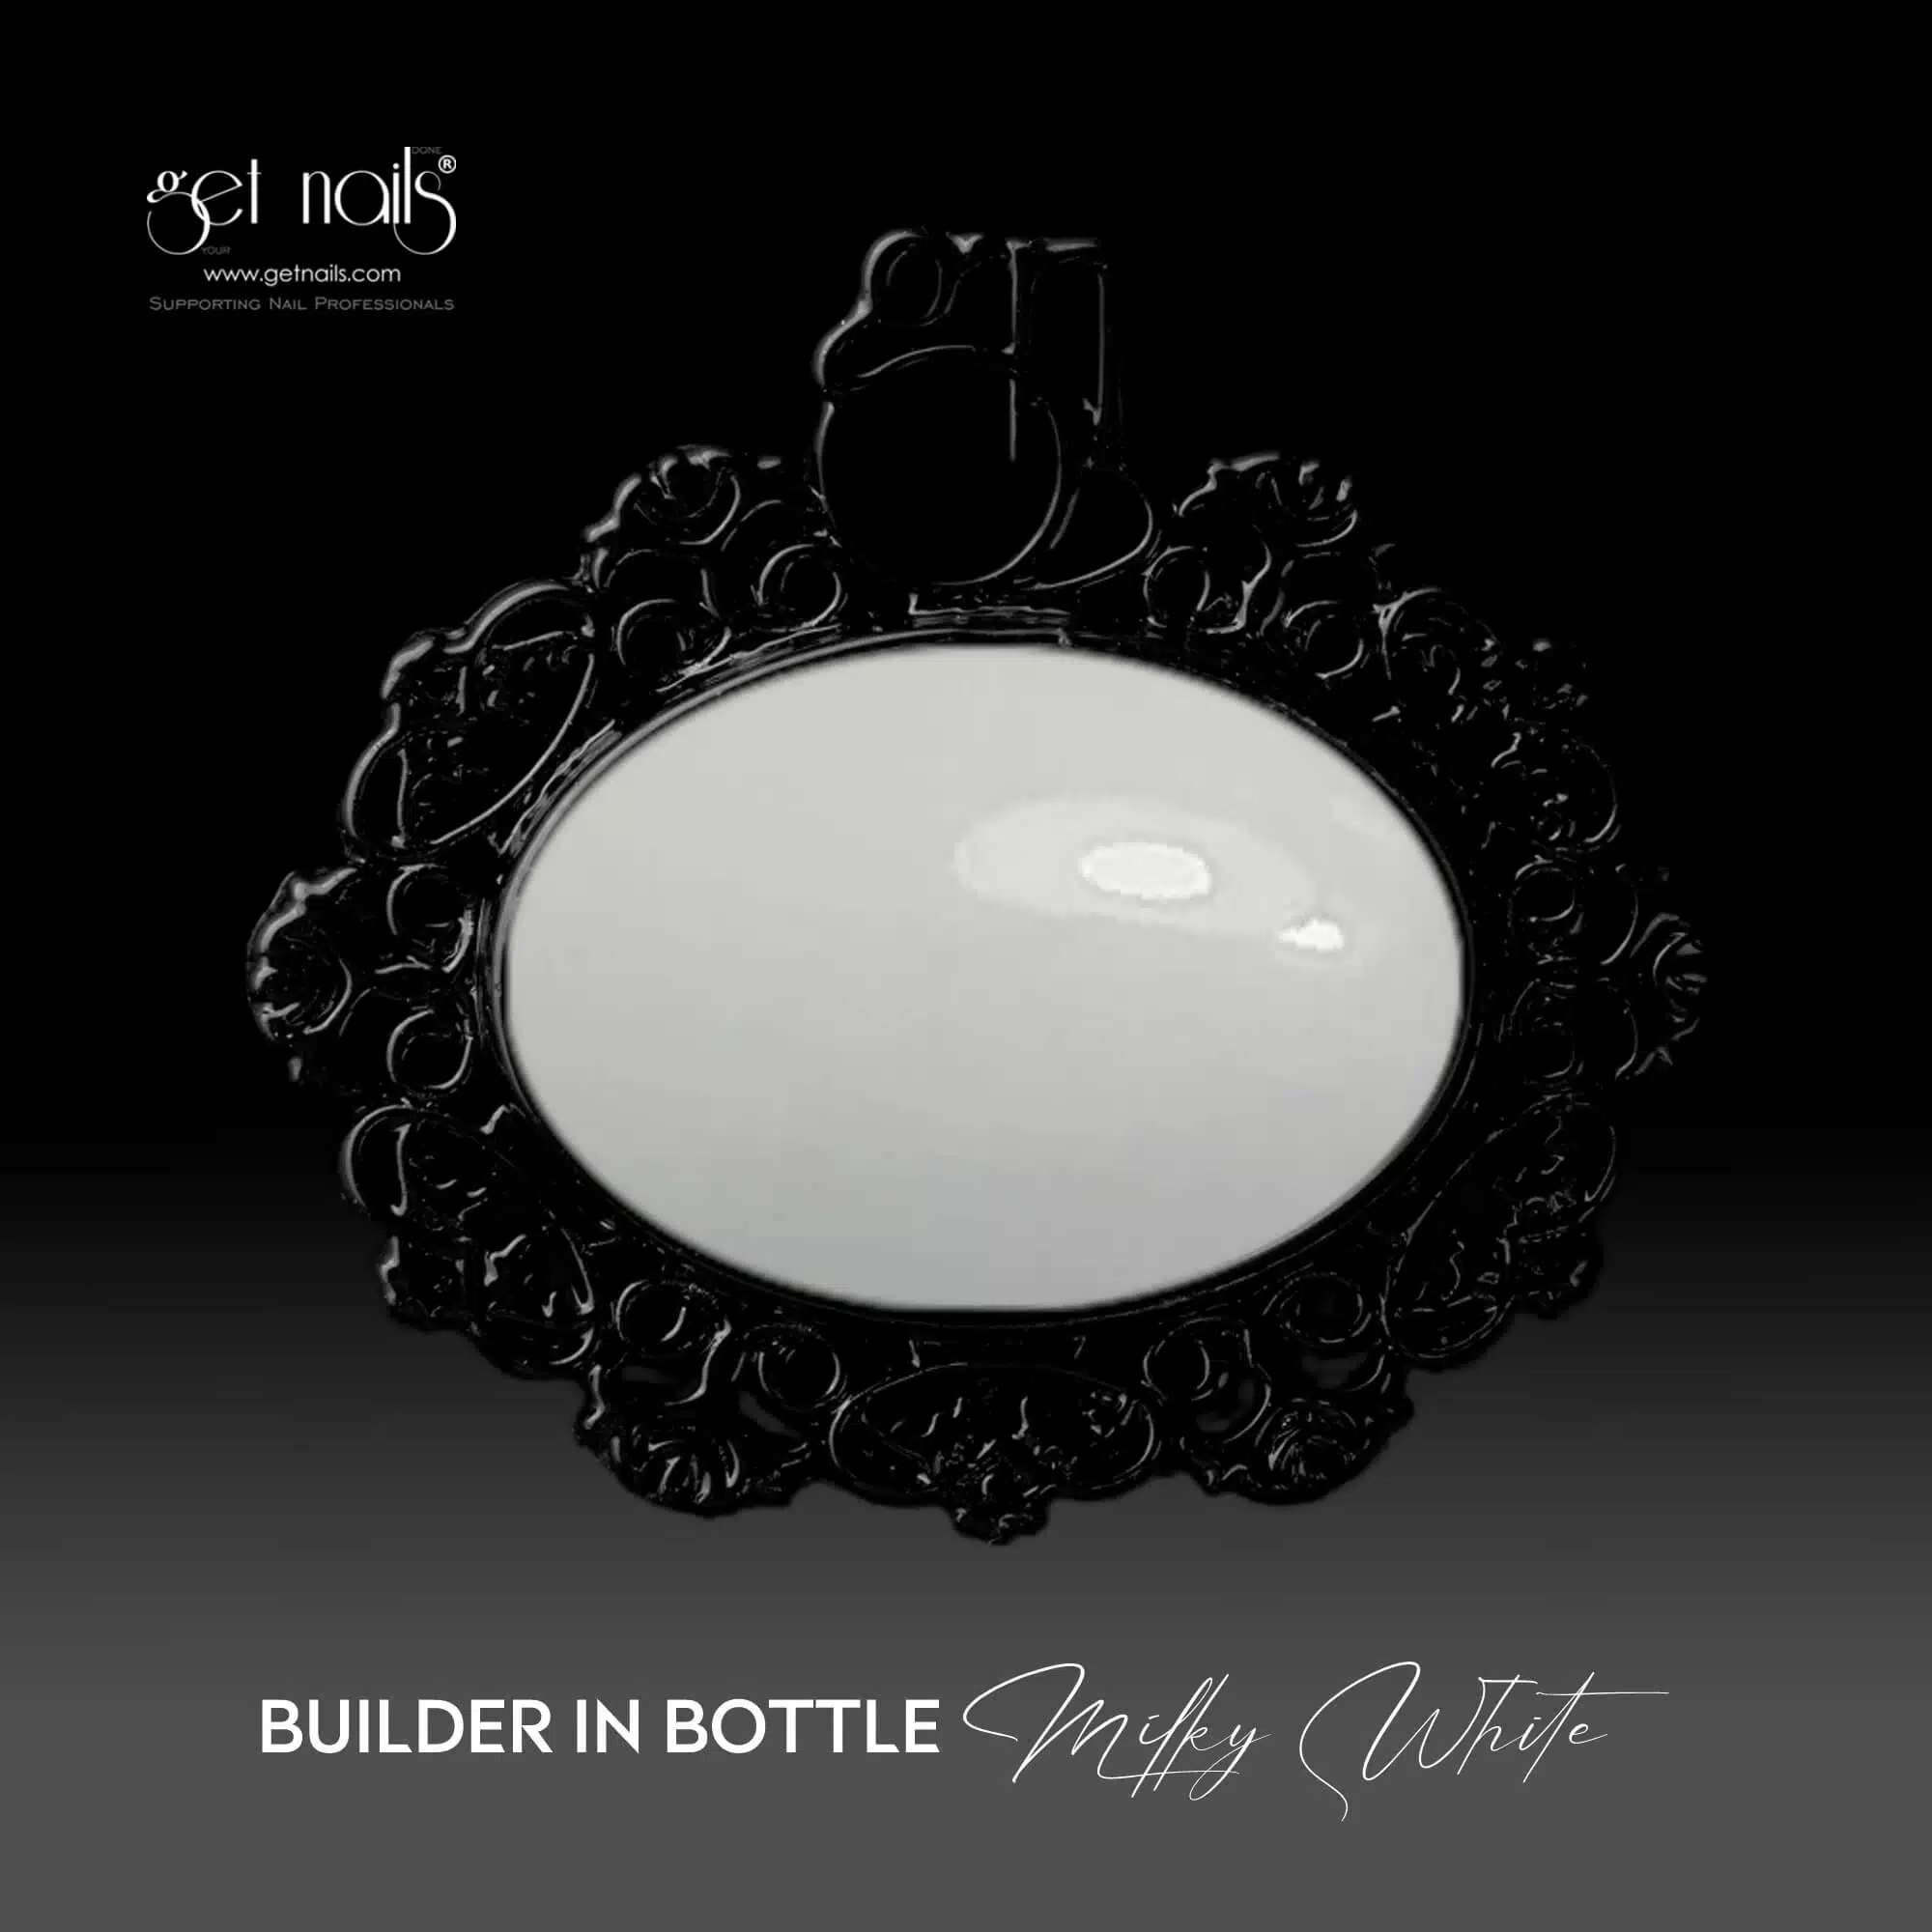 Get Nails Austria - Builder in Bottle Milky White 15g